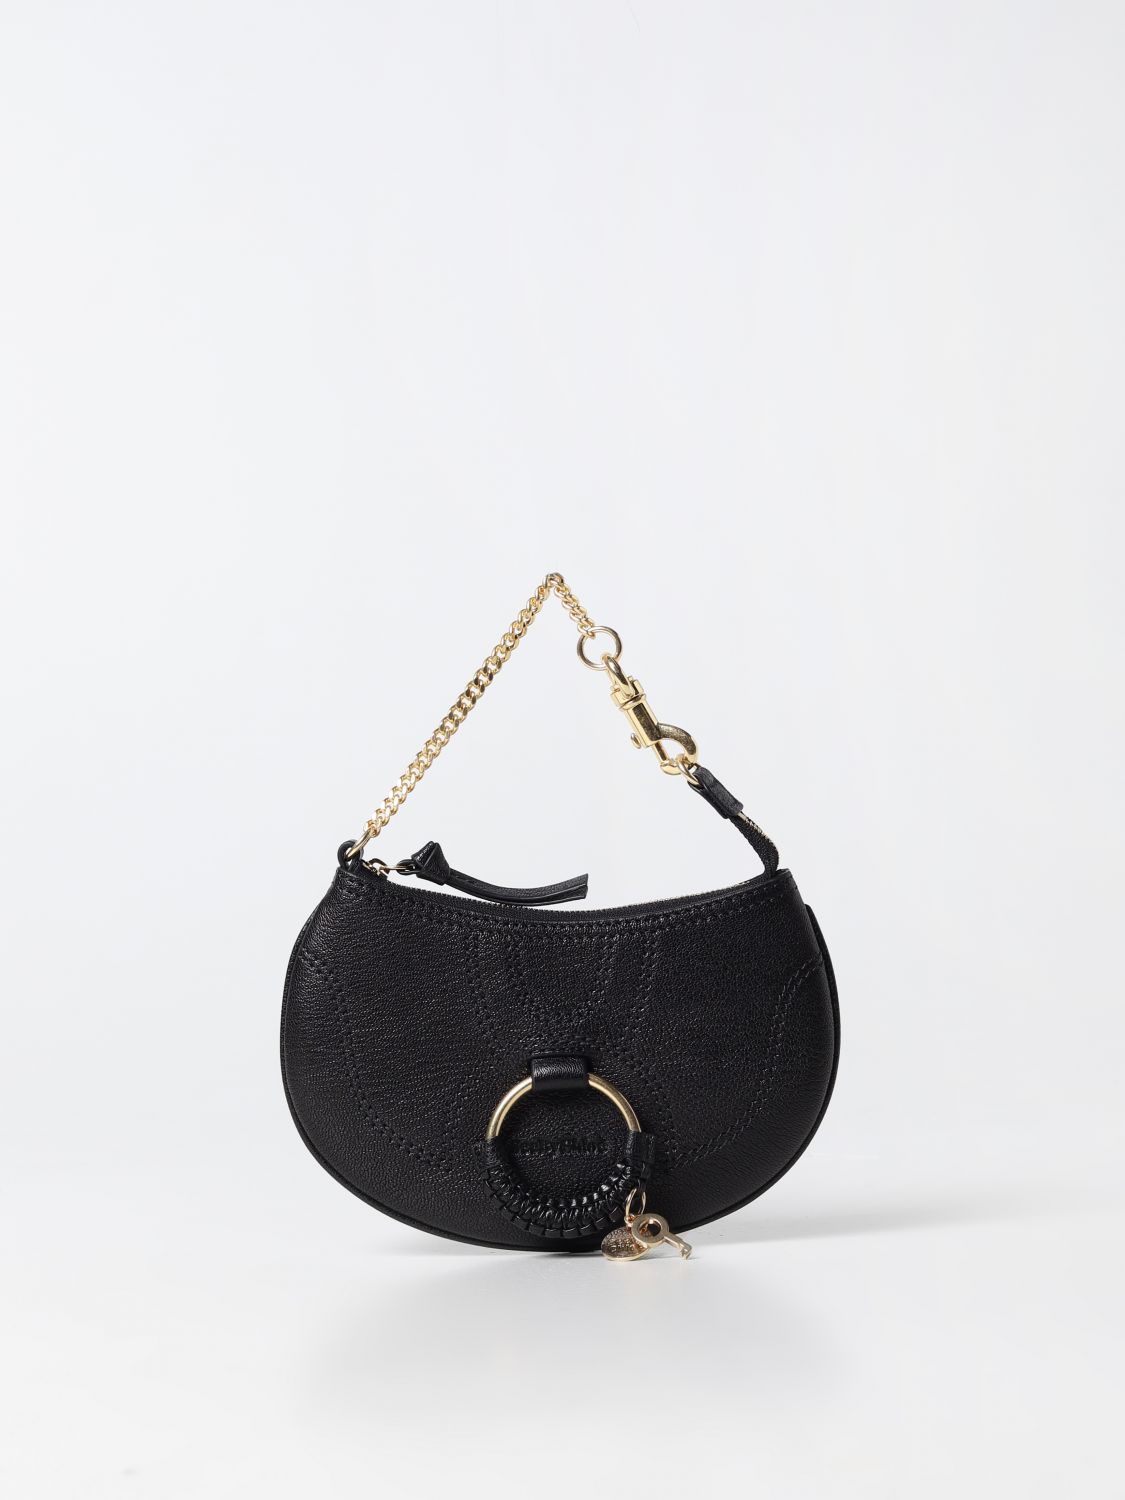 See by Chloé Woman's Mini Bag